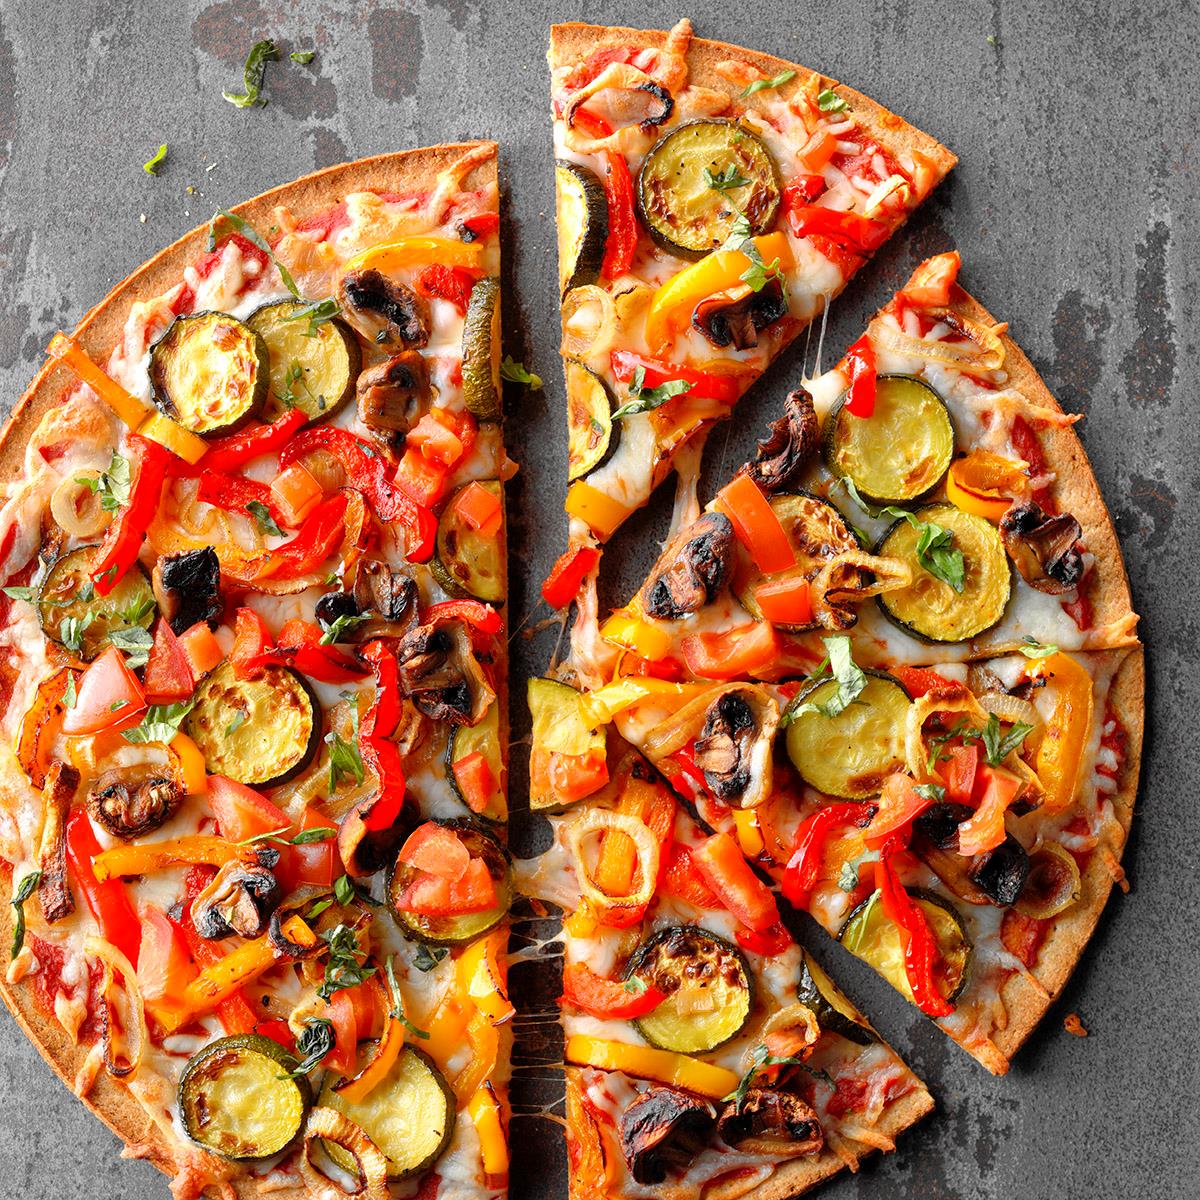 Hasil gambar untuk pizza vegetarian